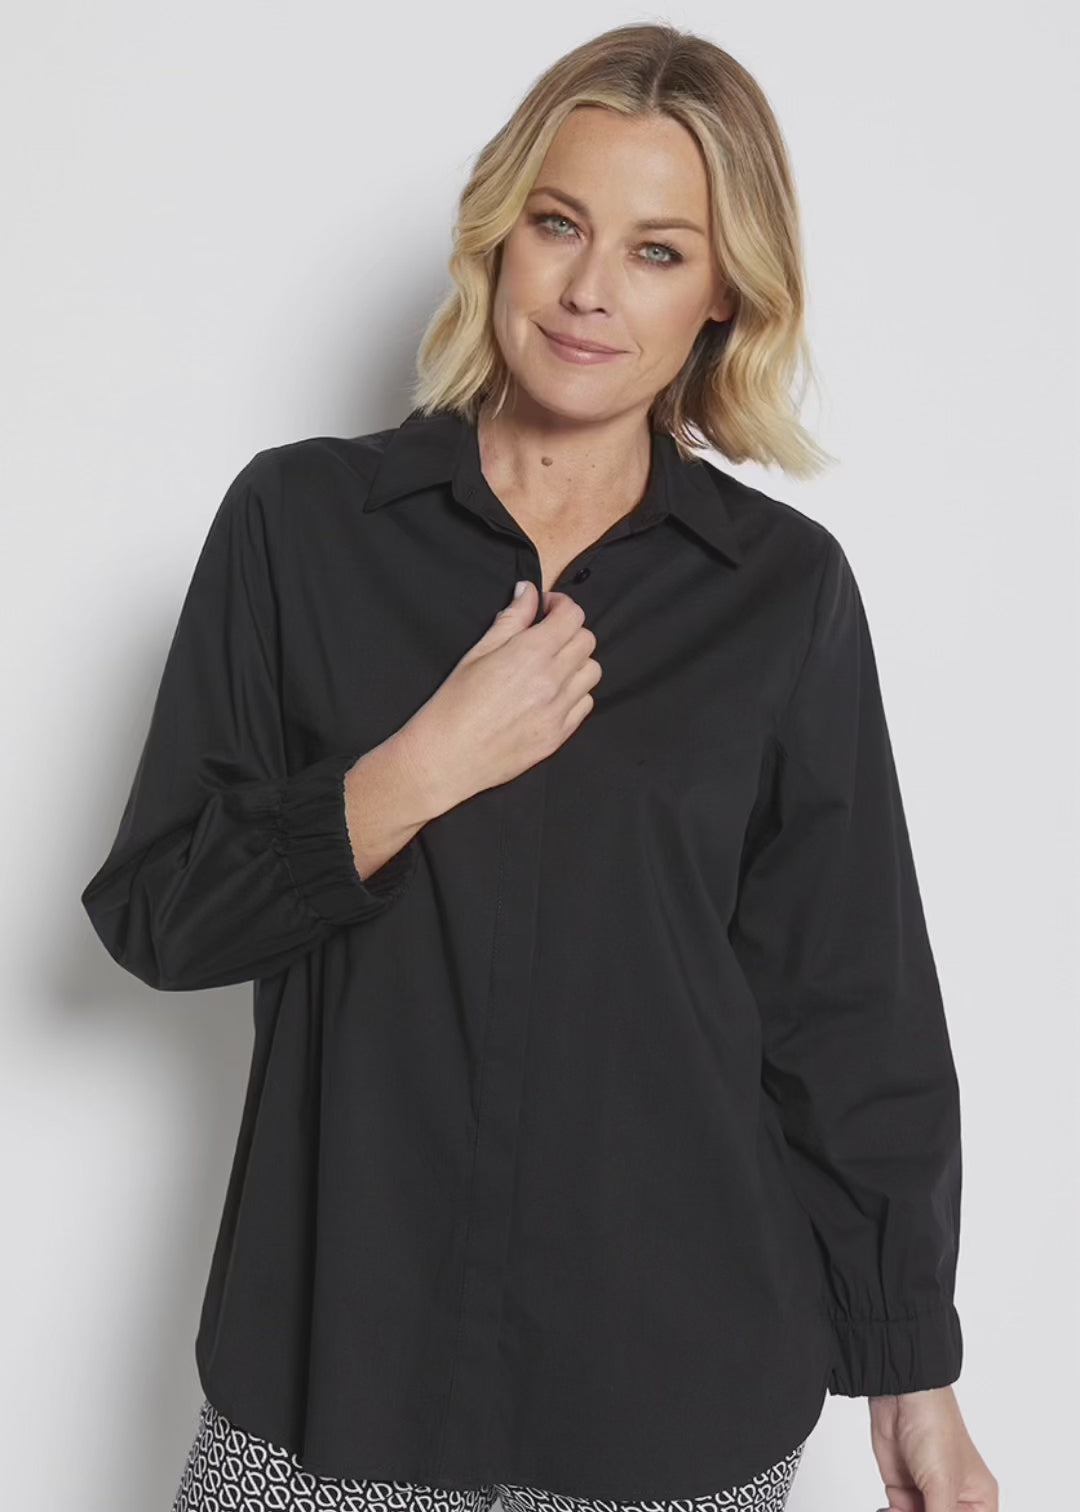 Natalie Cotton Shirt in Black